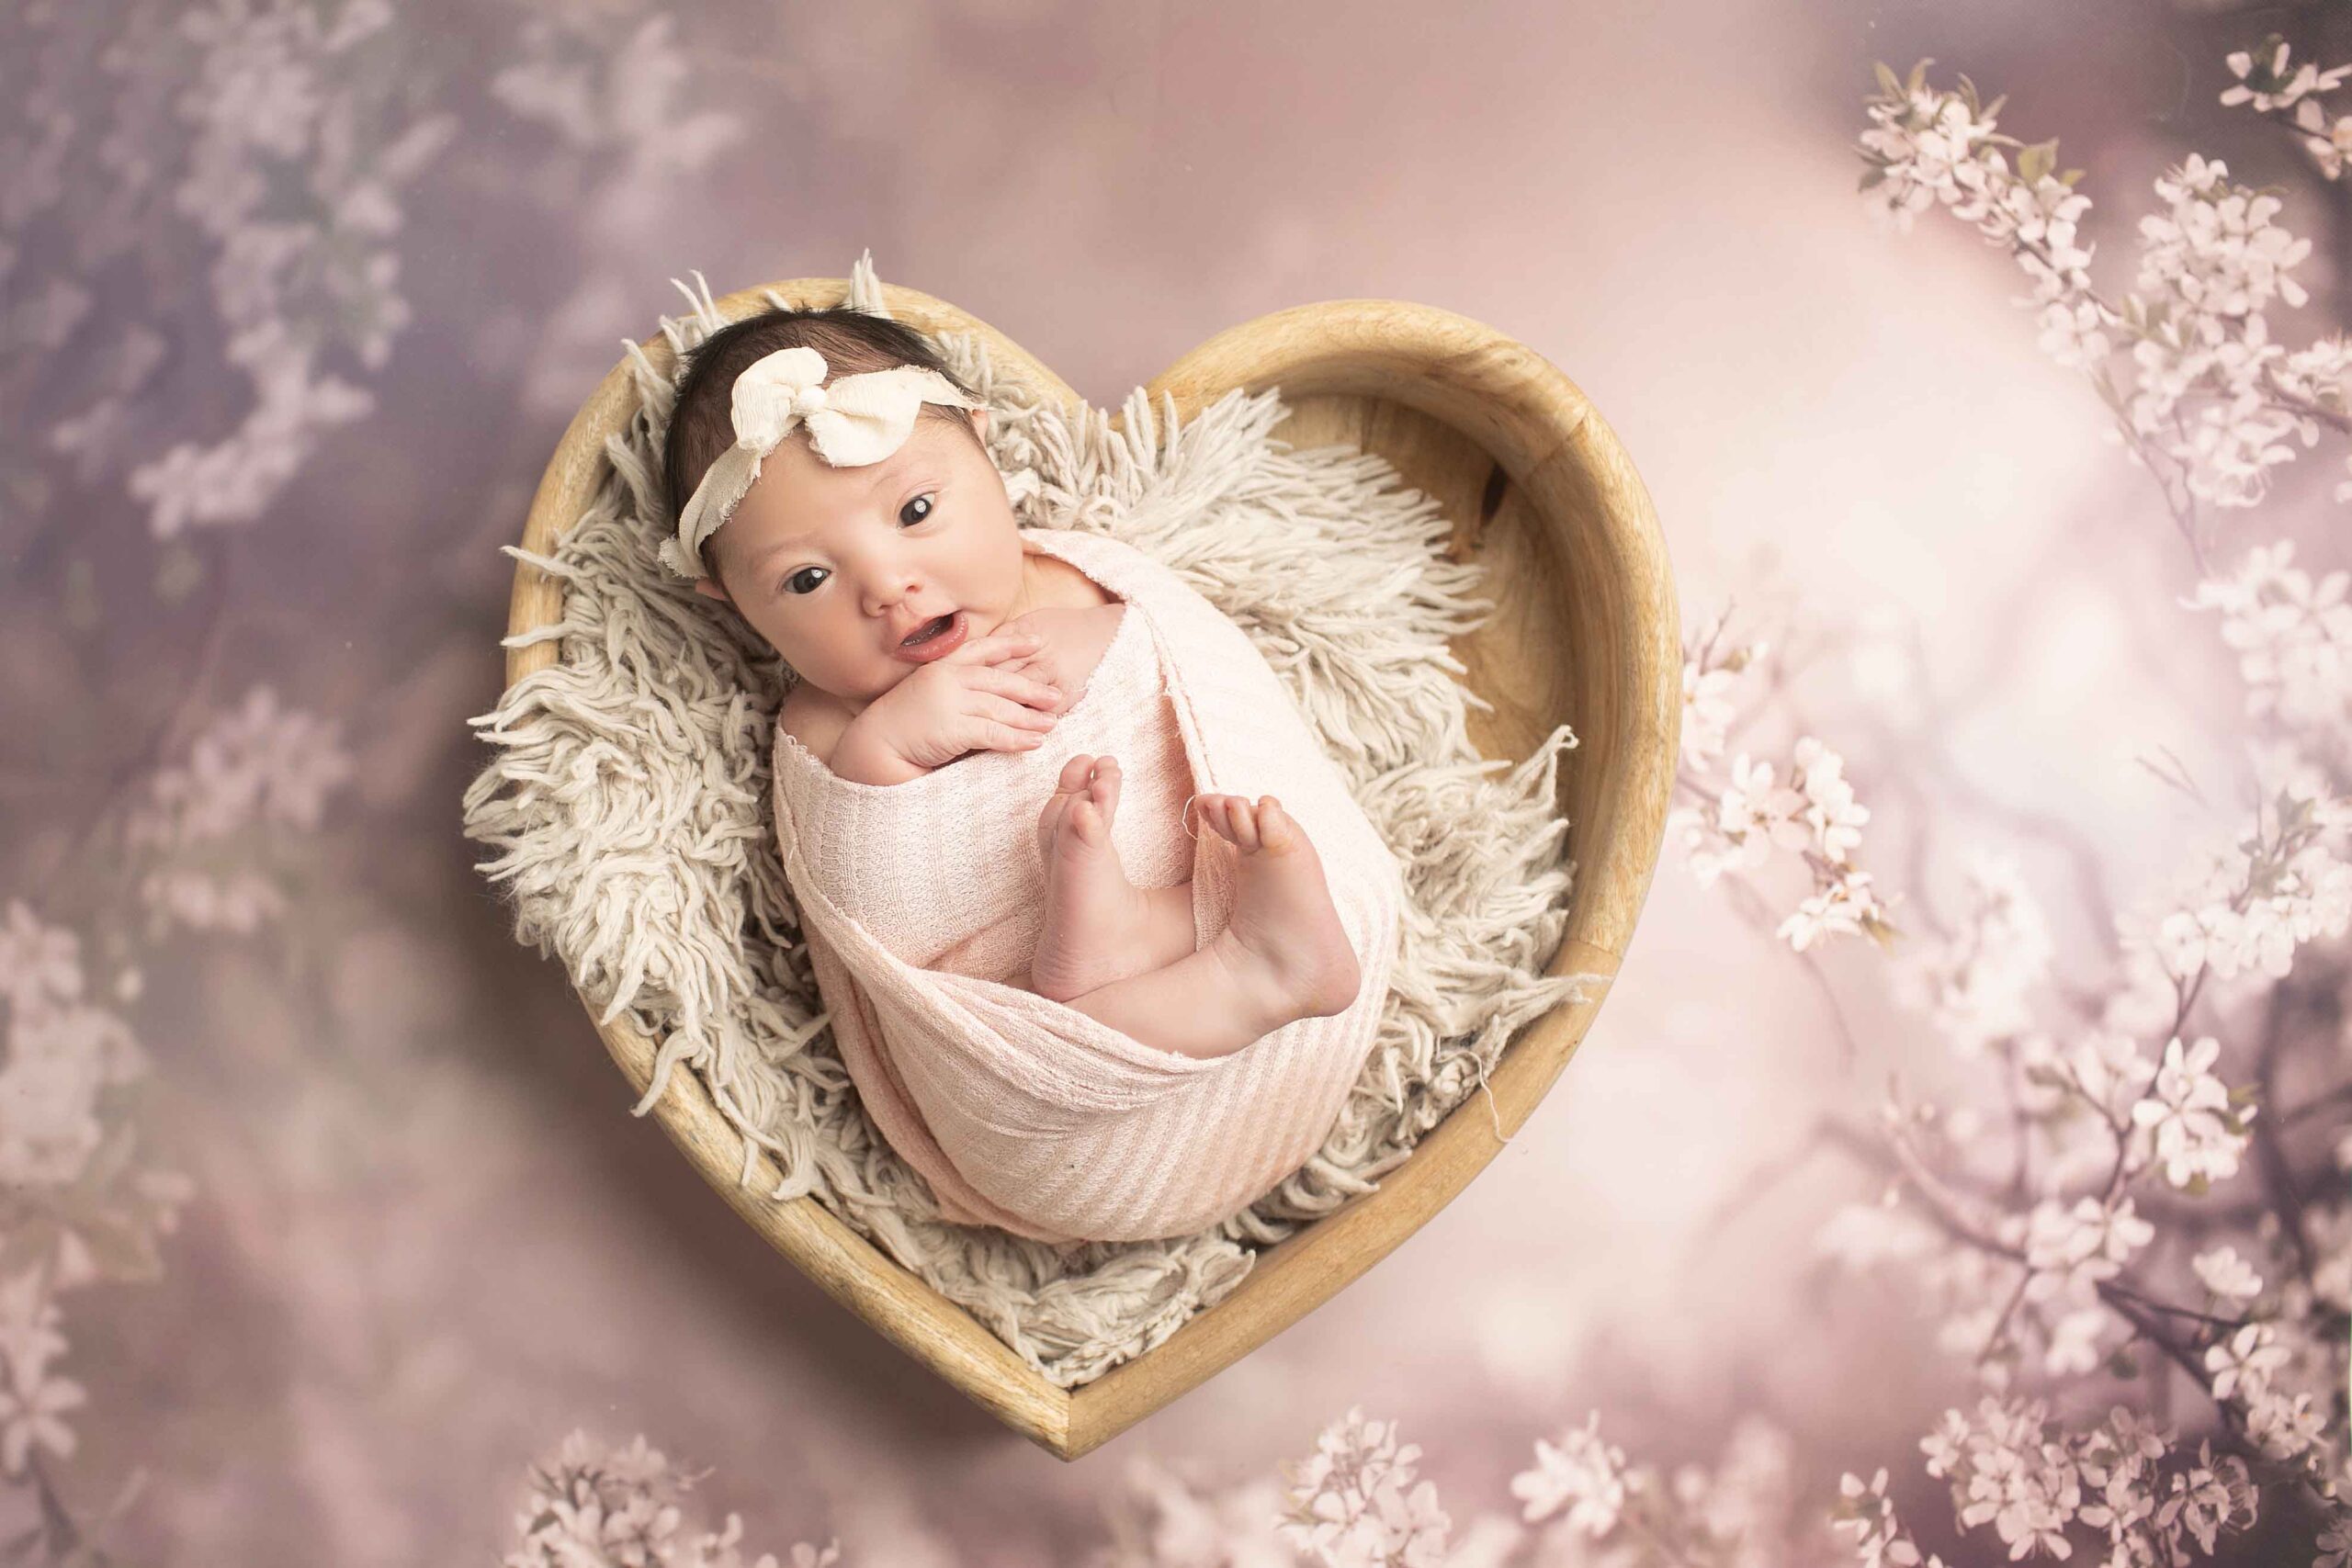 Newborn Baby Girl in heart bowl on purple flowers